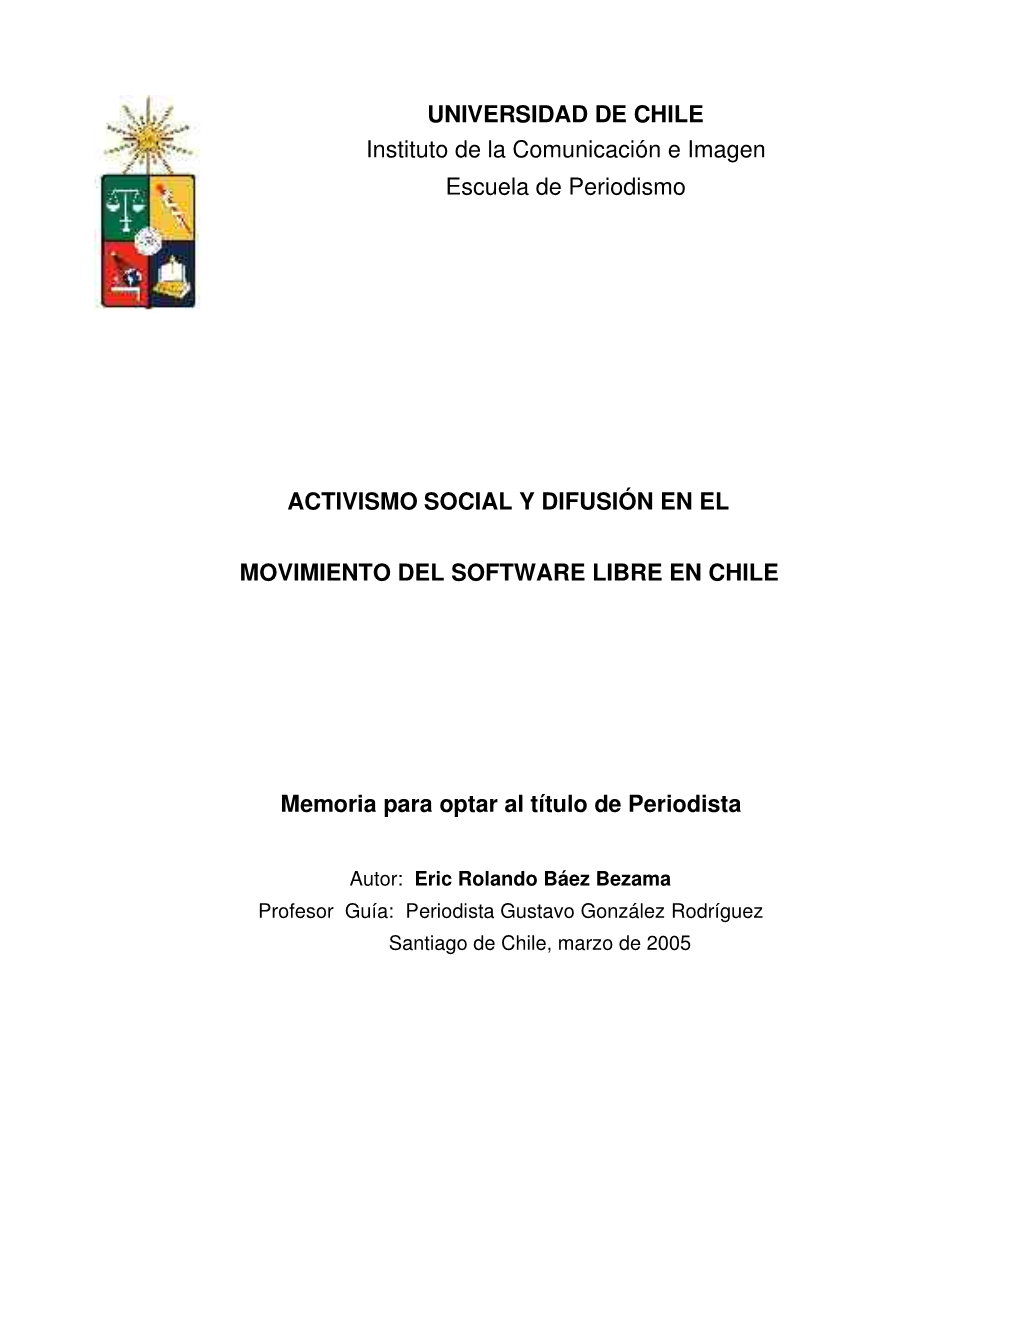 UNIVERSIDAD DE CHILE Instituto De La Comunicación E Imagen Escuela De Periodismo ACTIVISMO SOCIAL Y DIFUSIÓN EN EL MOVIMIENTO